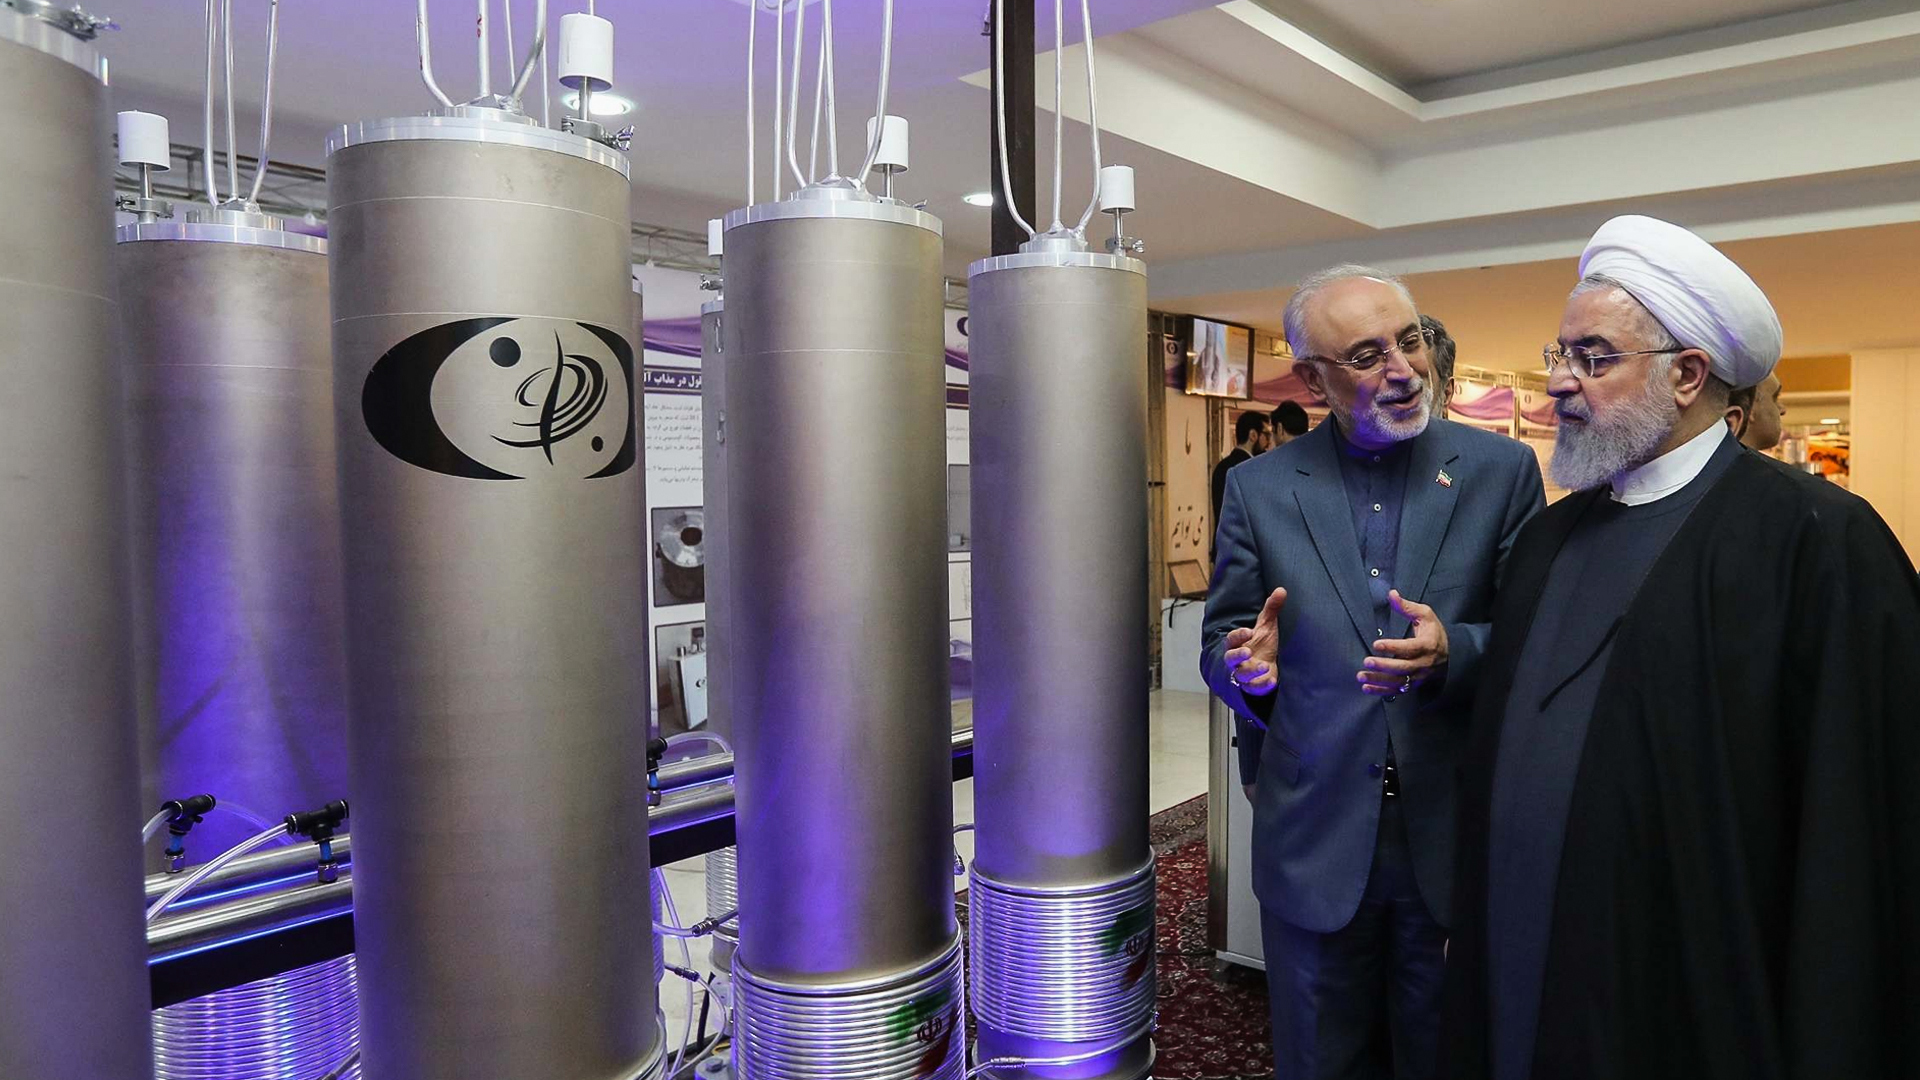 التوظيف السياسي للثقافة يفسر رفض الغرب امتلاك إيران التكنولوجيا النووية